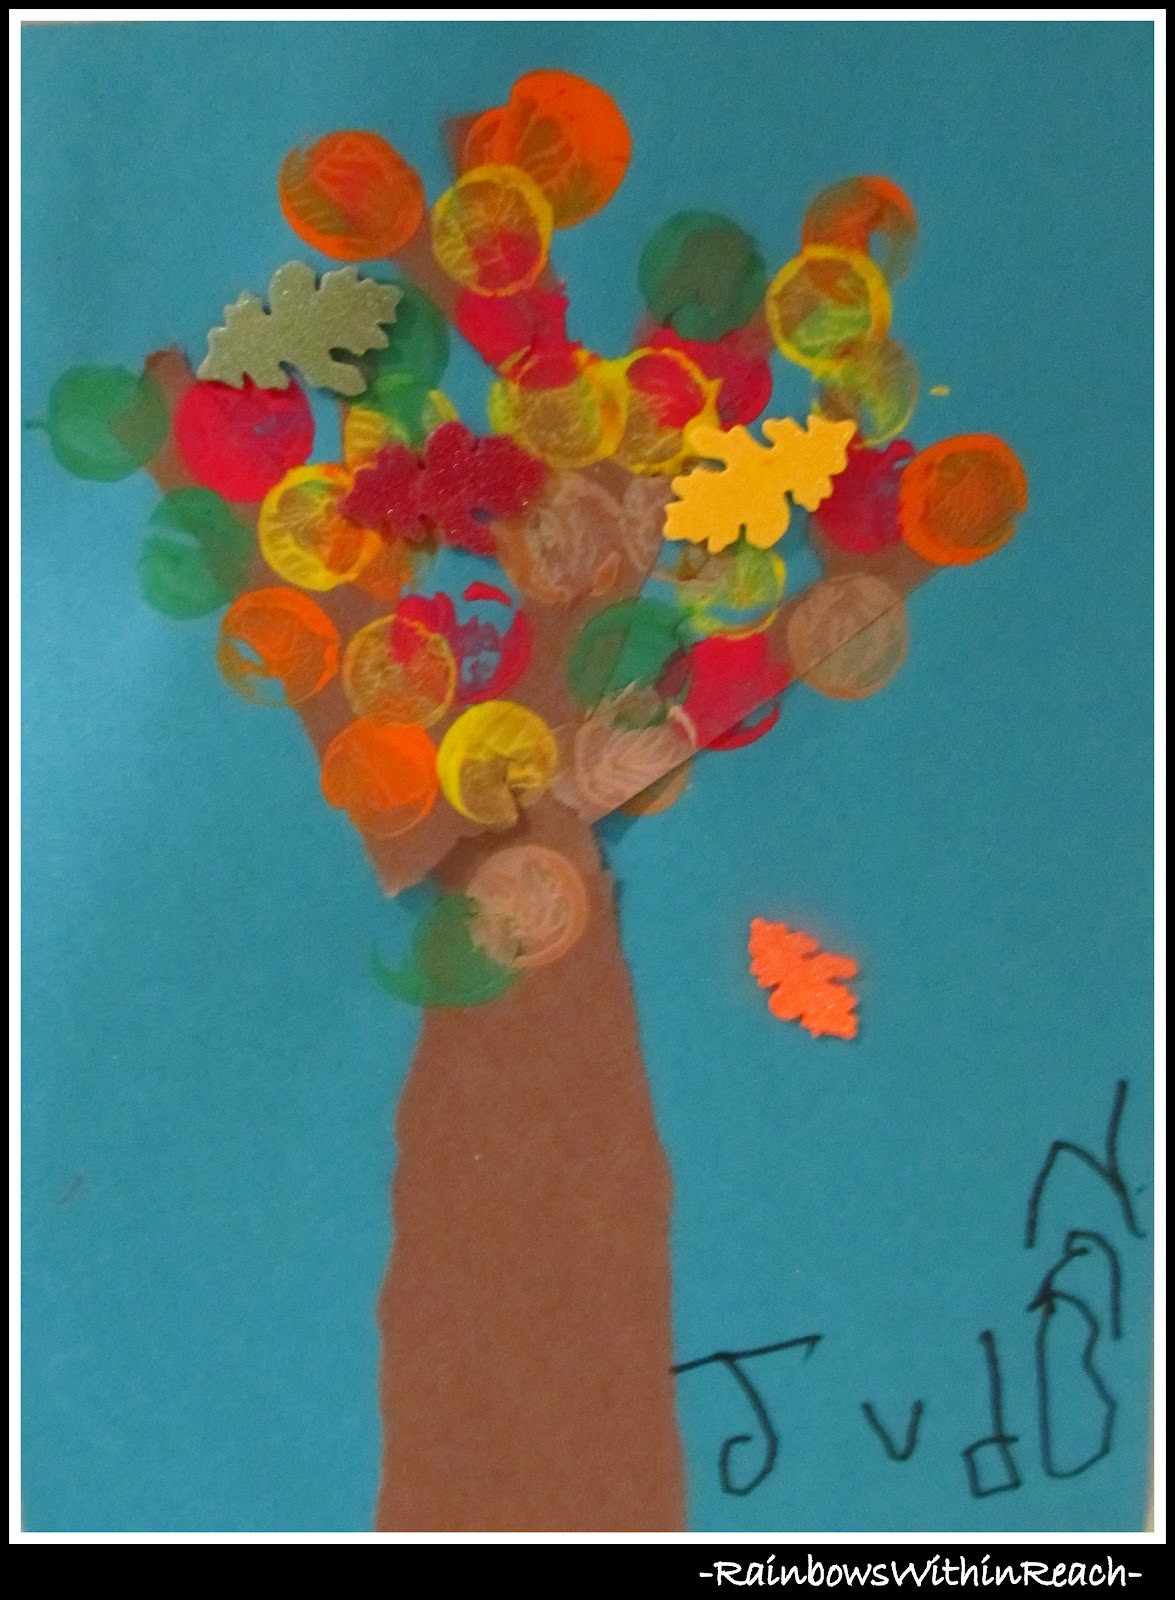 Preschool Art Project Ideas
 Fall Leaf Art Project in Preschool DrSeussProjects